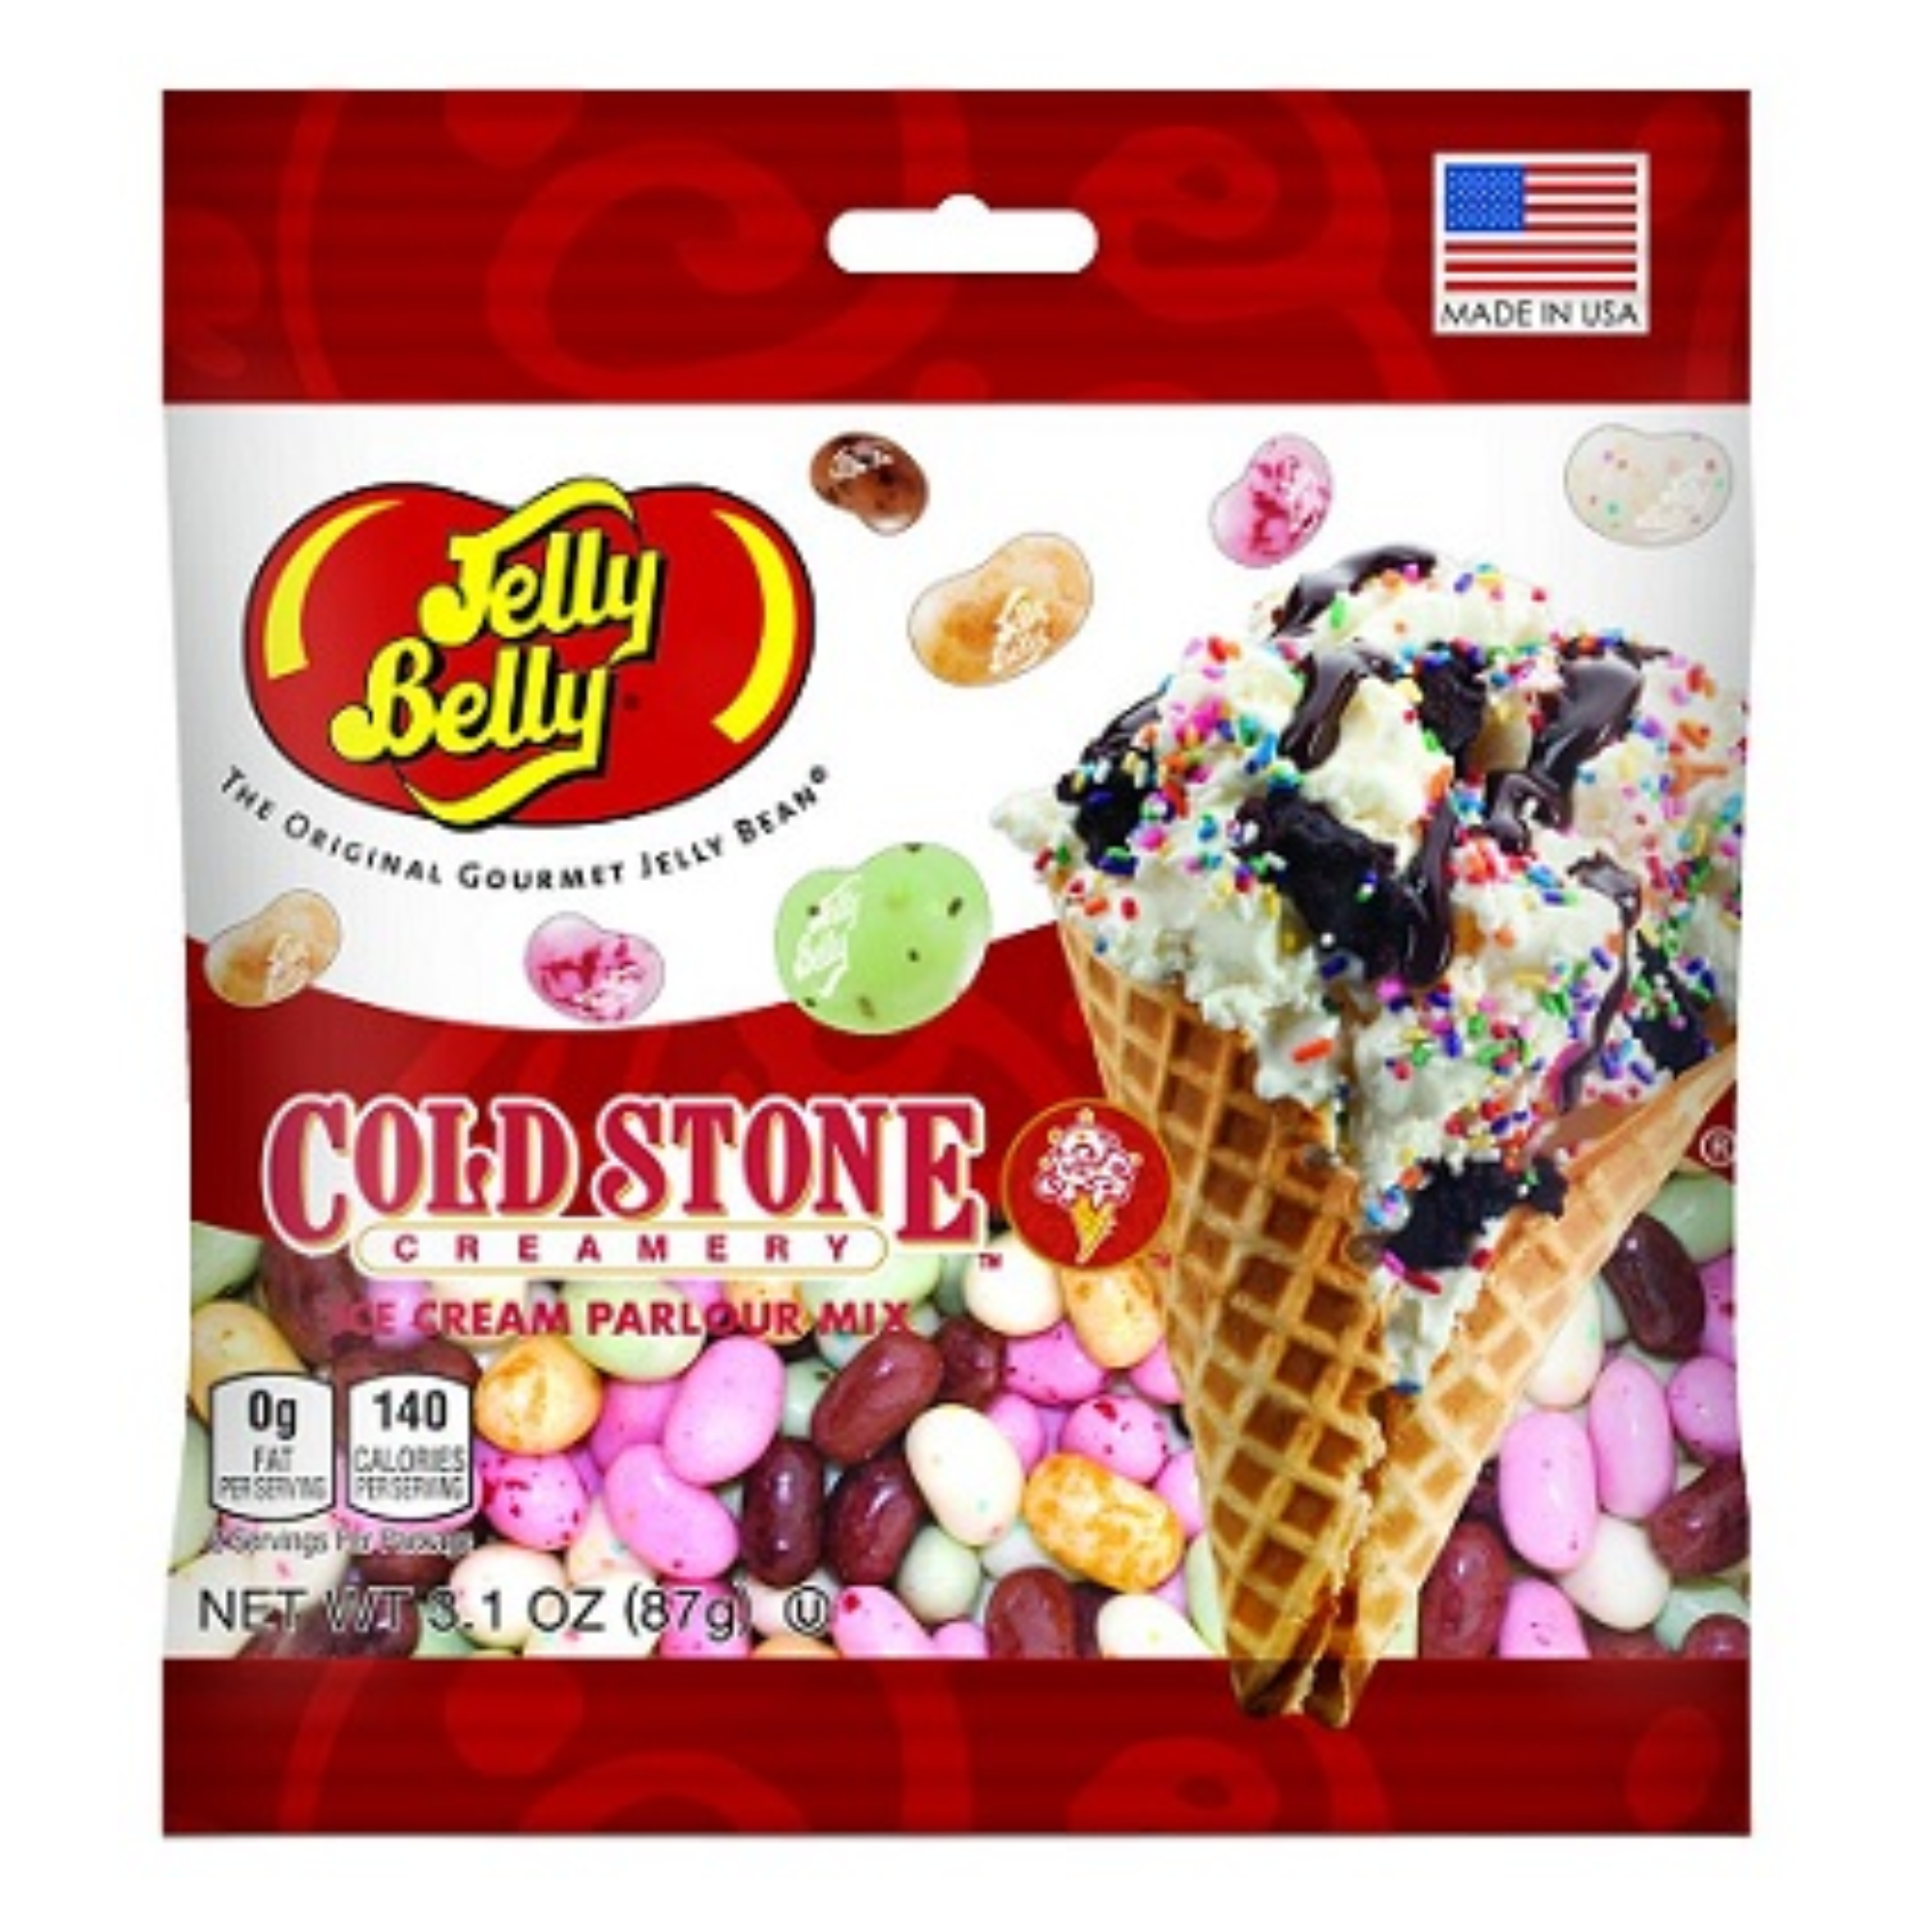 Bubble Gum Jelly Beans 3.5 oz Grab & Go® Bag